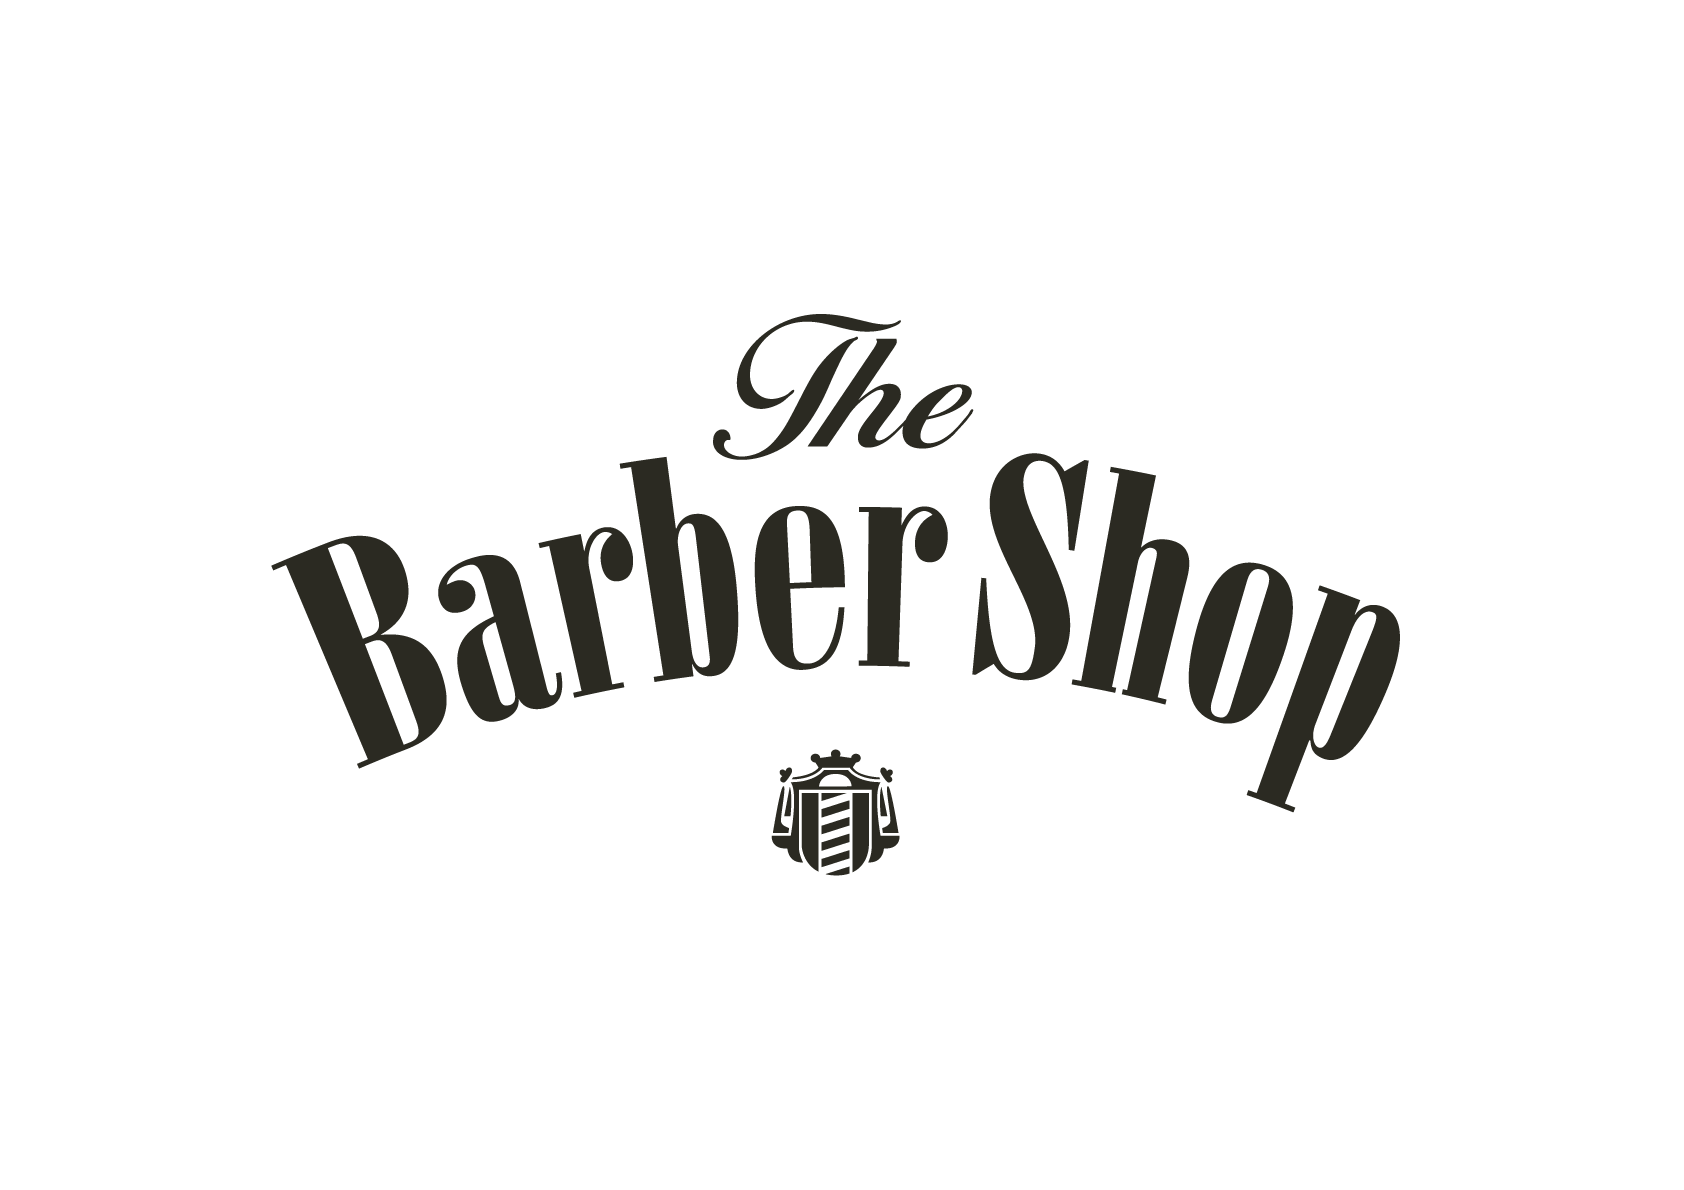 barbershop logo images